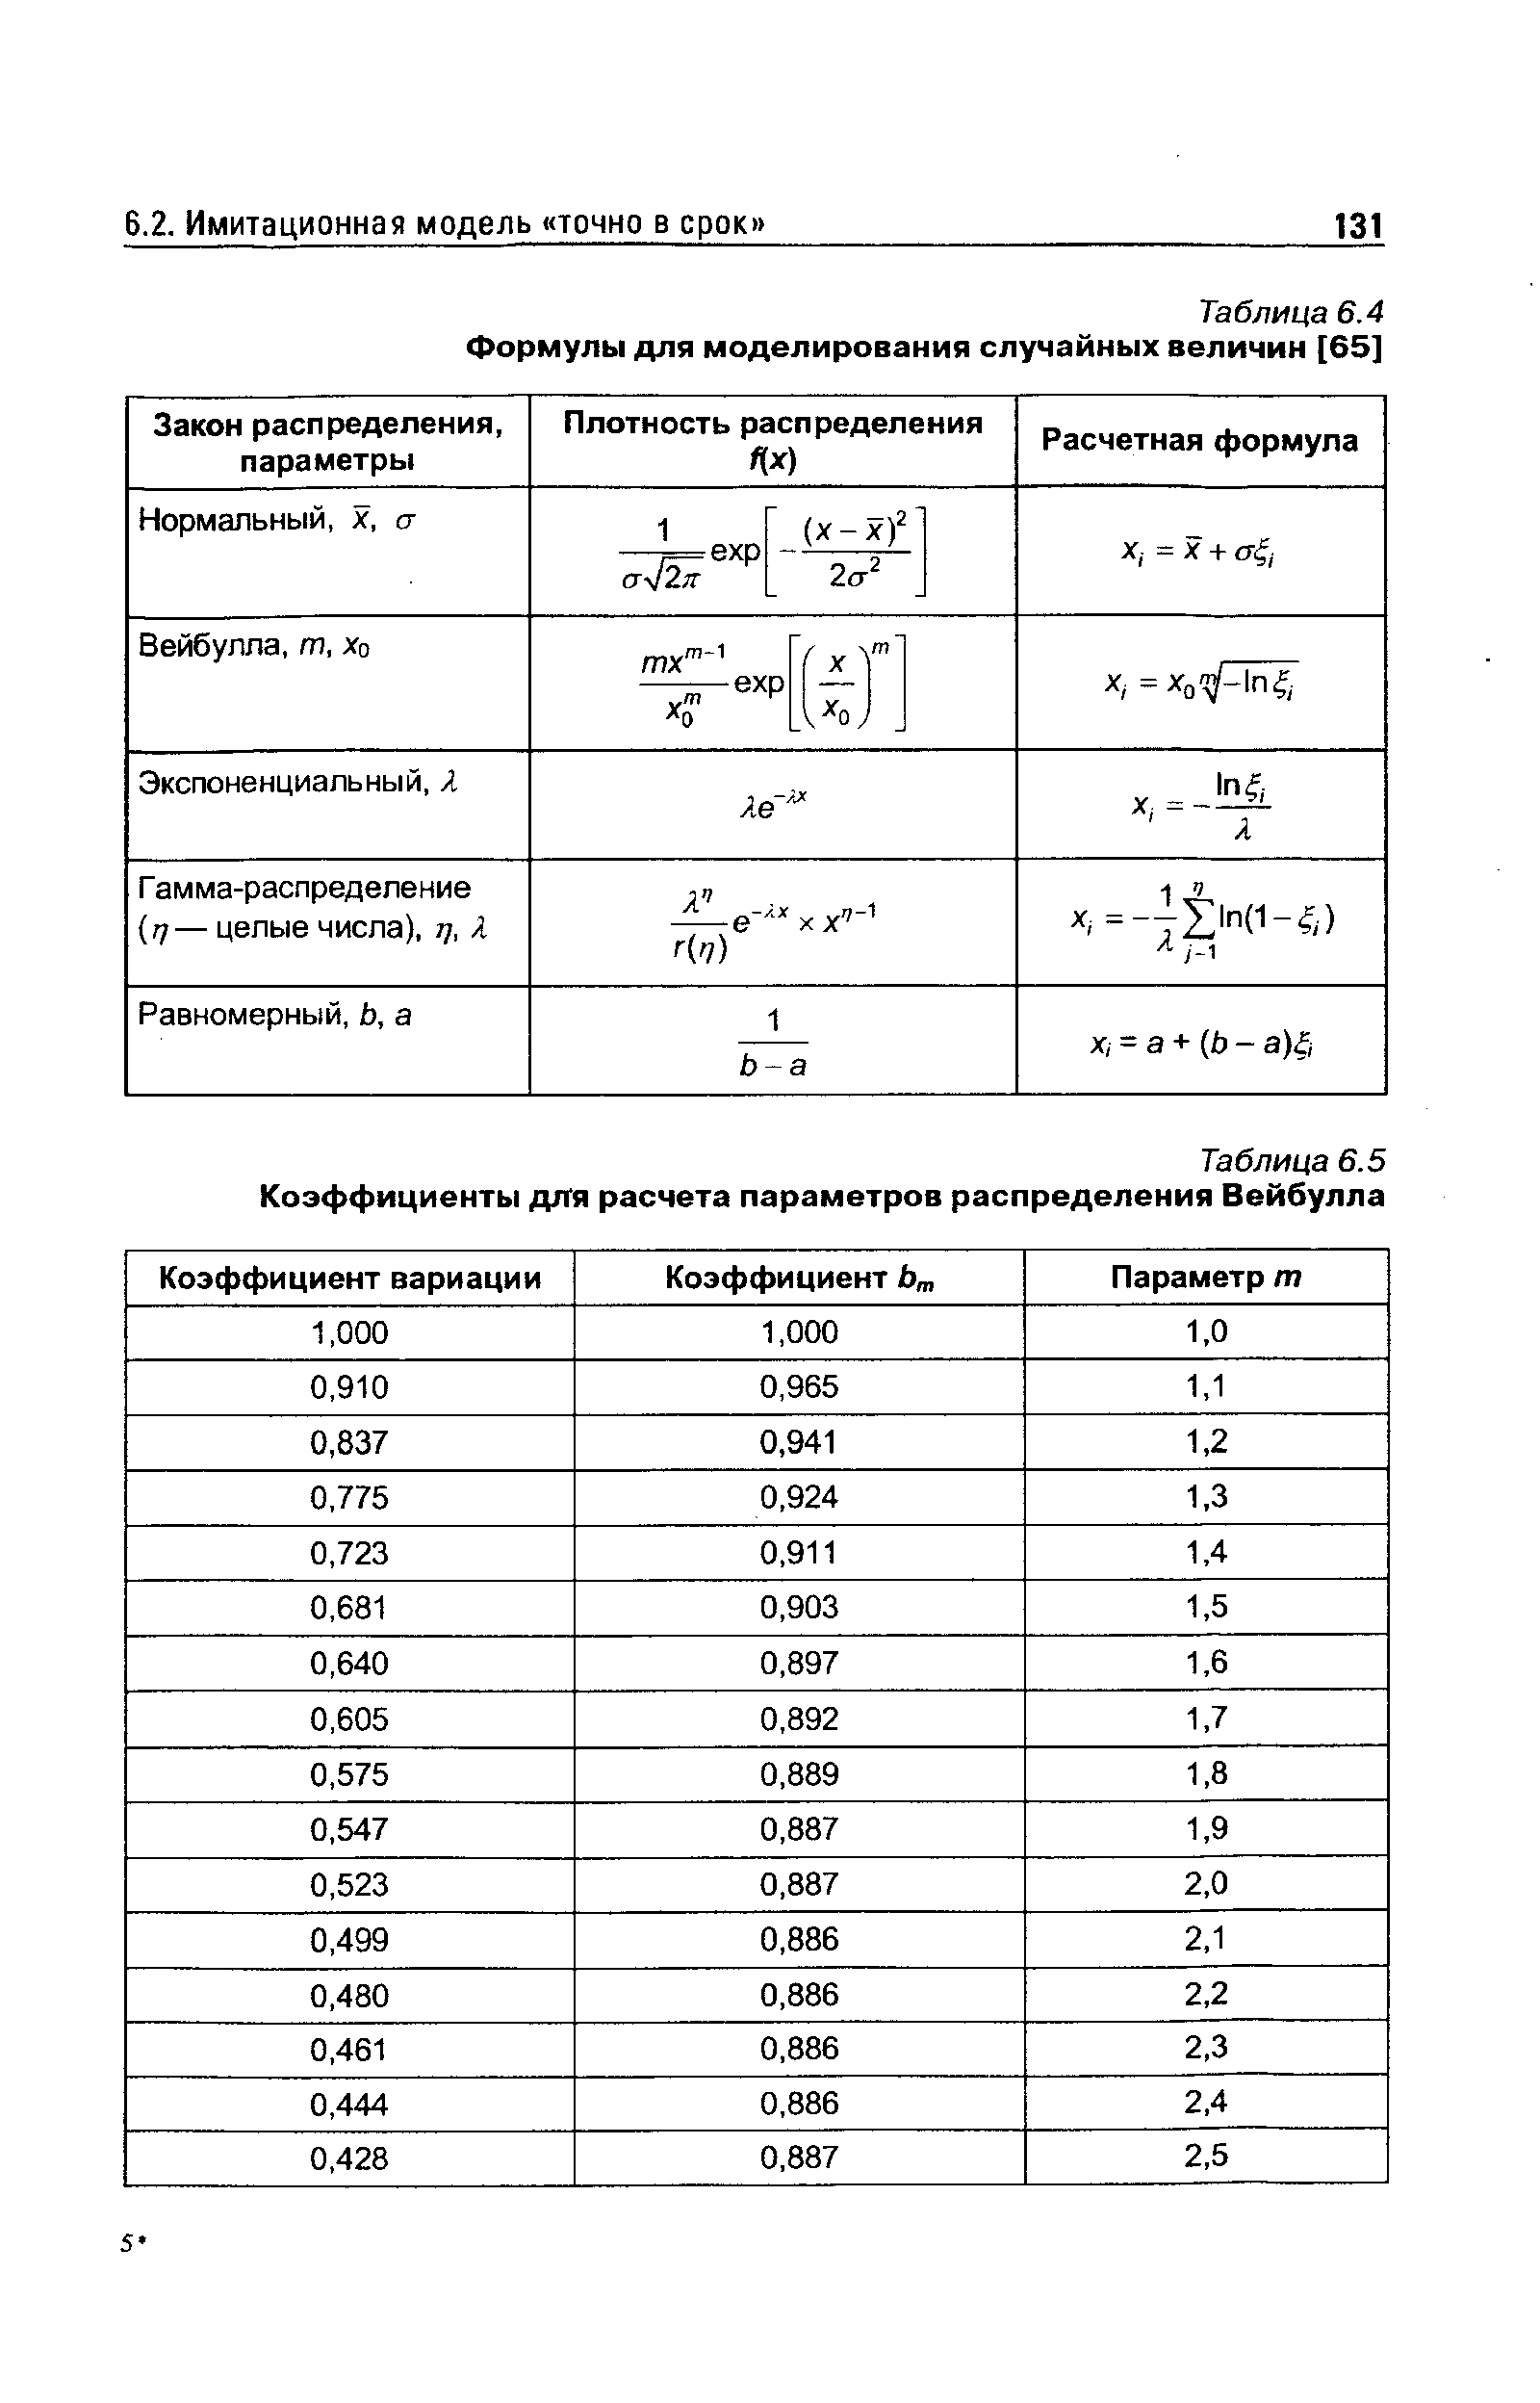 Таблица 6.4 Формулы для моделирования случайных величин [65]
